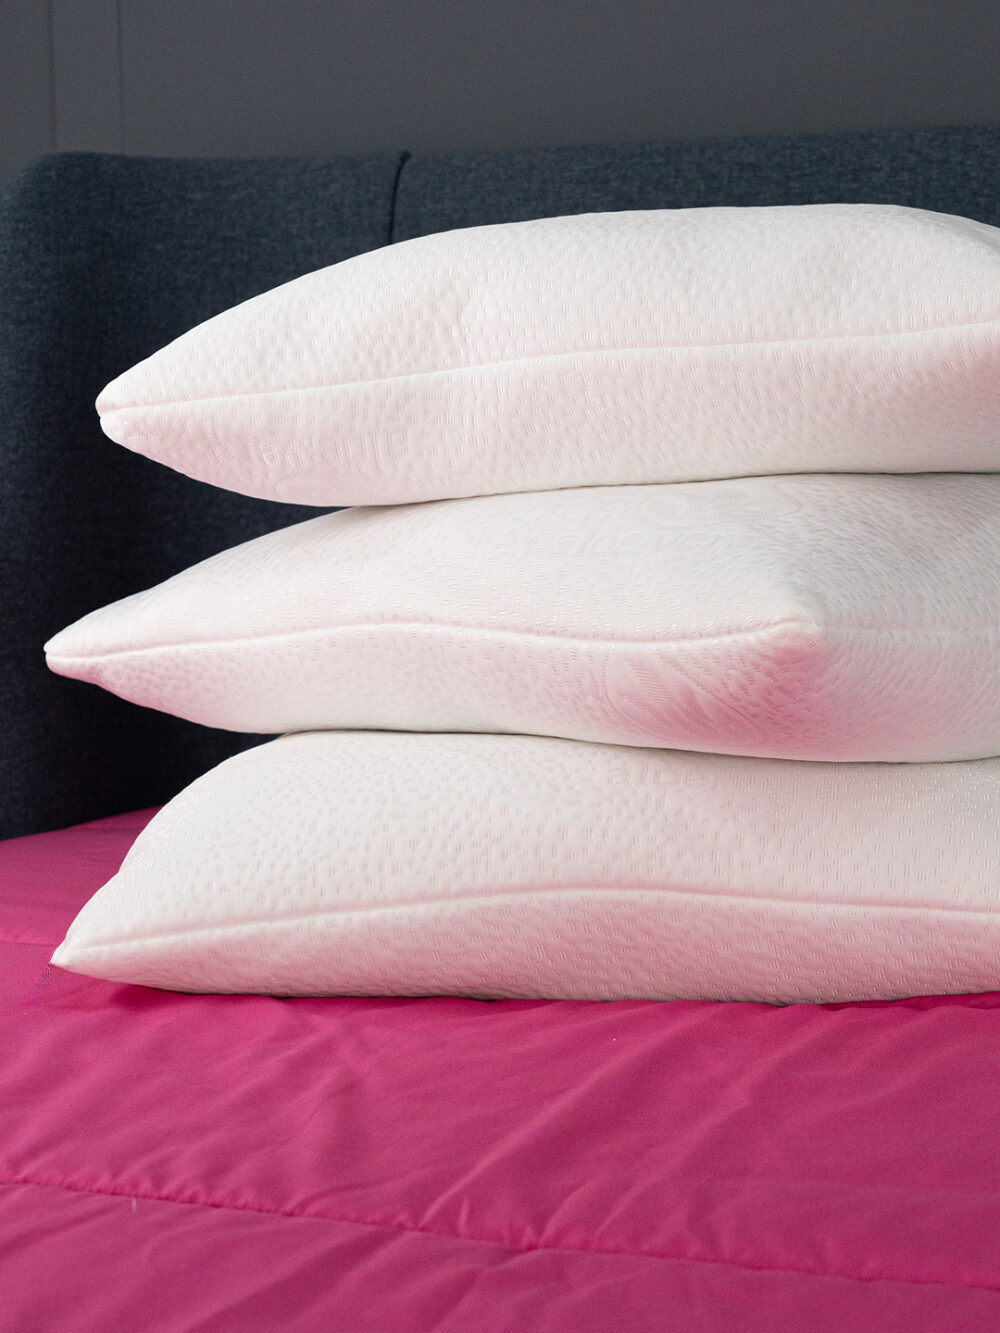 Almofada de Dormir com tecido premium Aloe Vera.